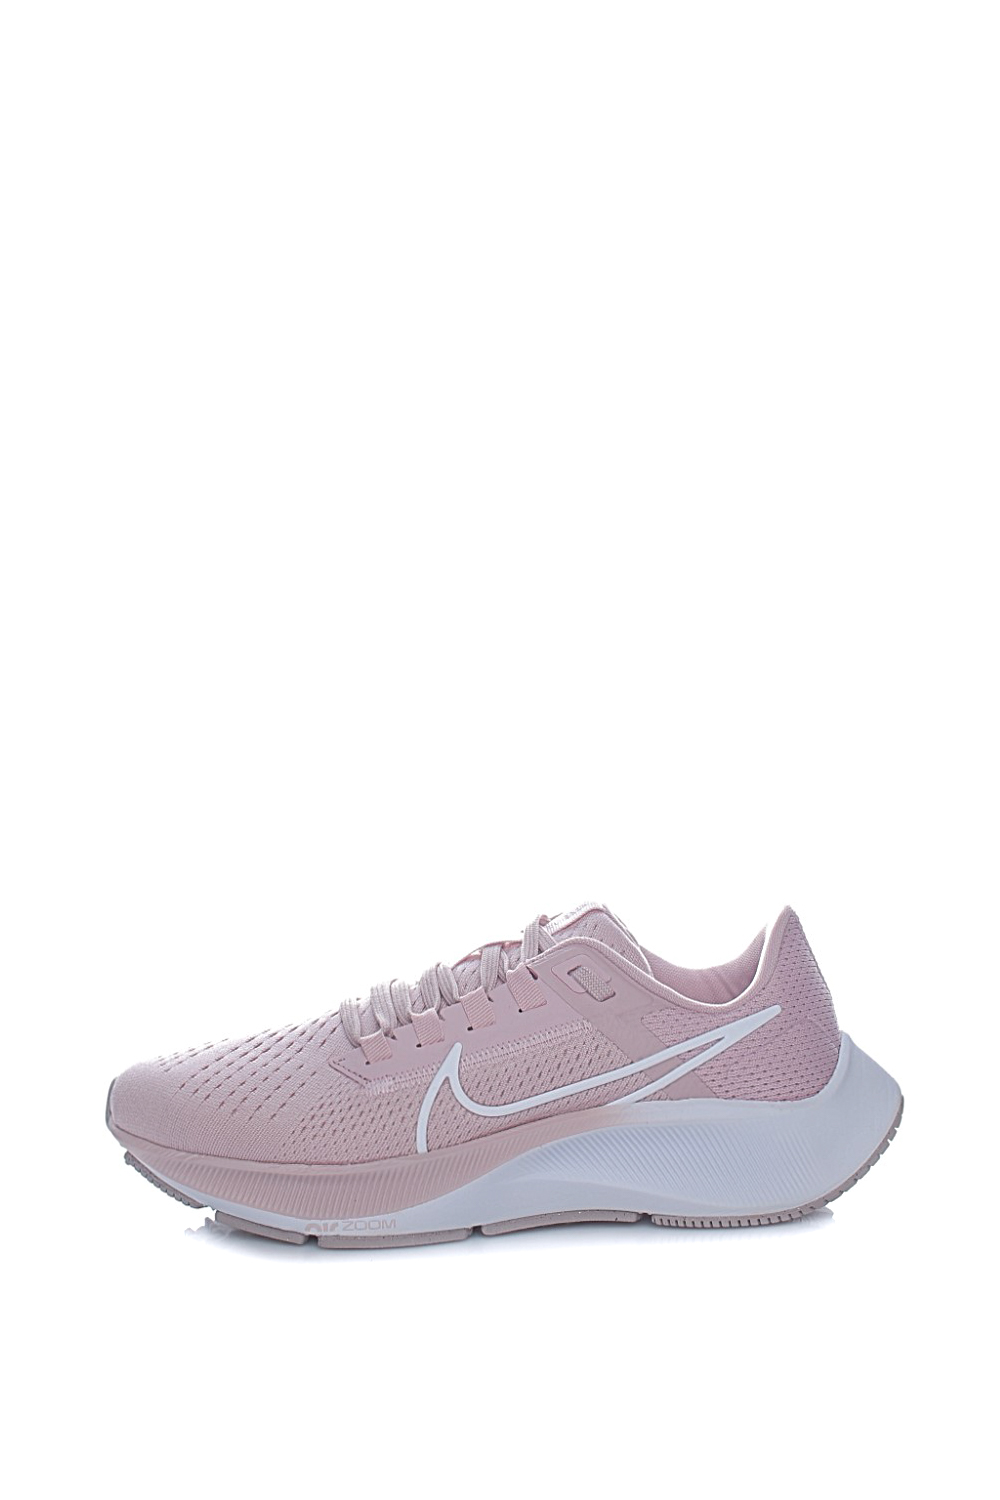 Γυναικεία/Παπούτσια/Αθλητικά/Running NIKE - Γυναικεία παπούτσια για τρέξιμο NIKE AIR ZOOM PEGASUS 38 ροζ